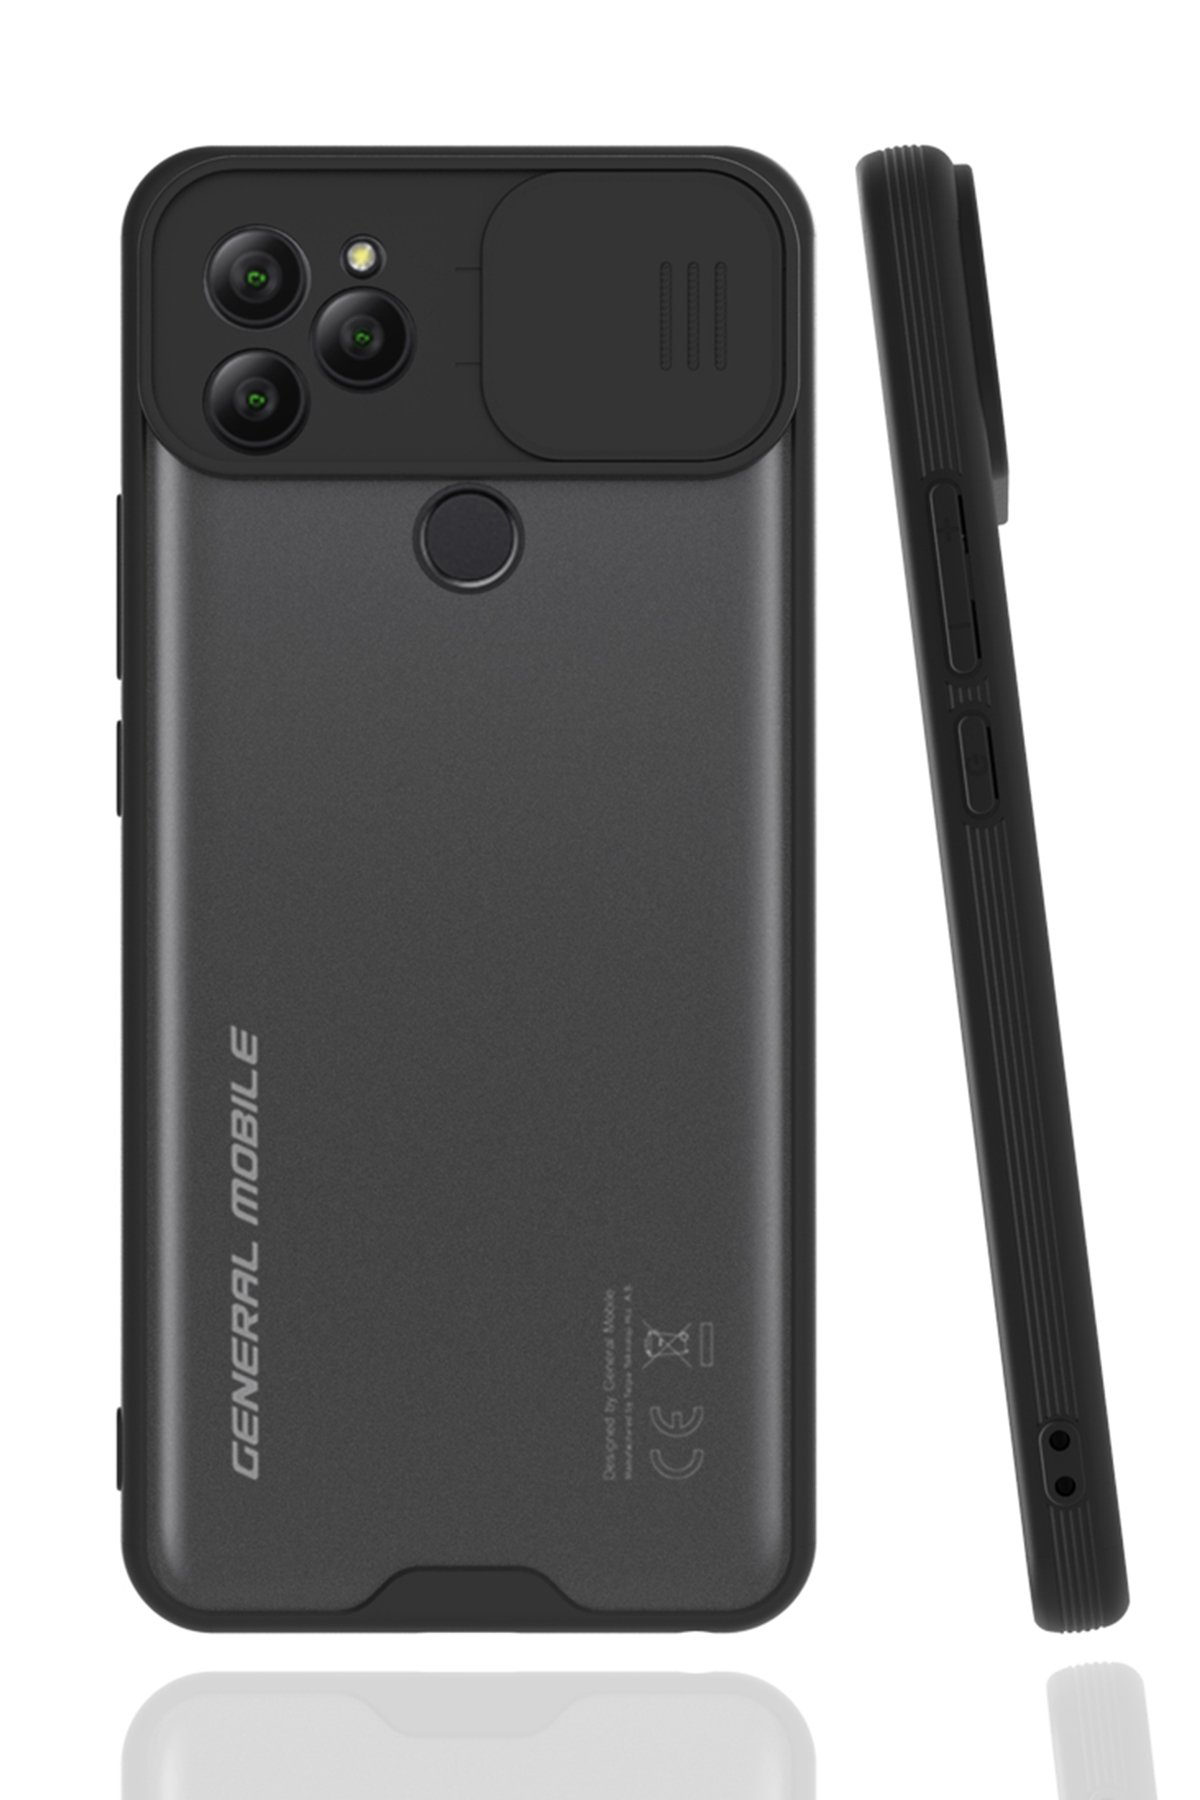 Newface General Mobile GM 21 Kılıf Nano içi Kadife  Silikon - Siyah